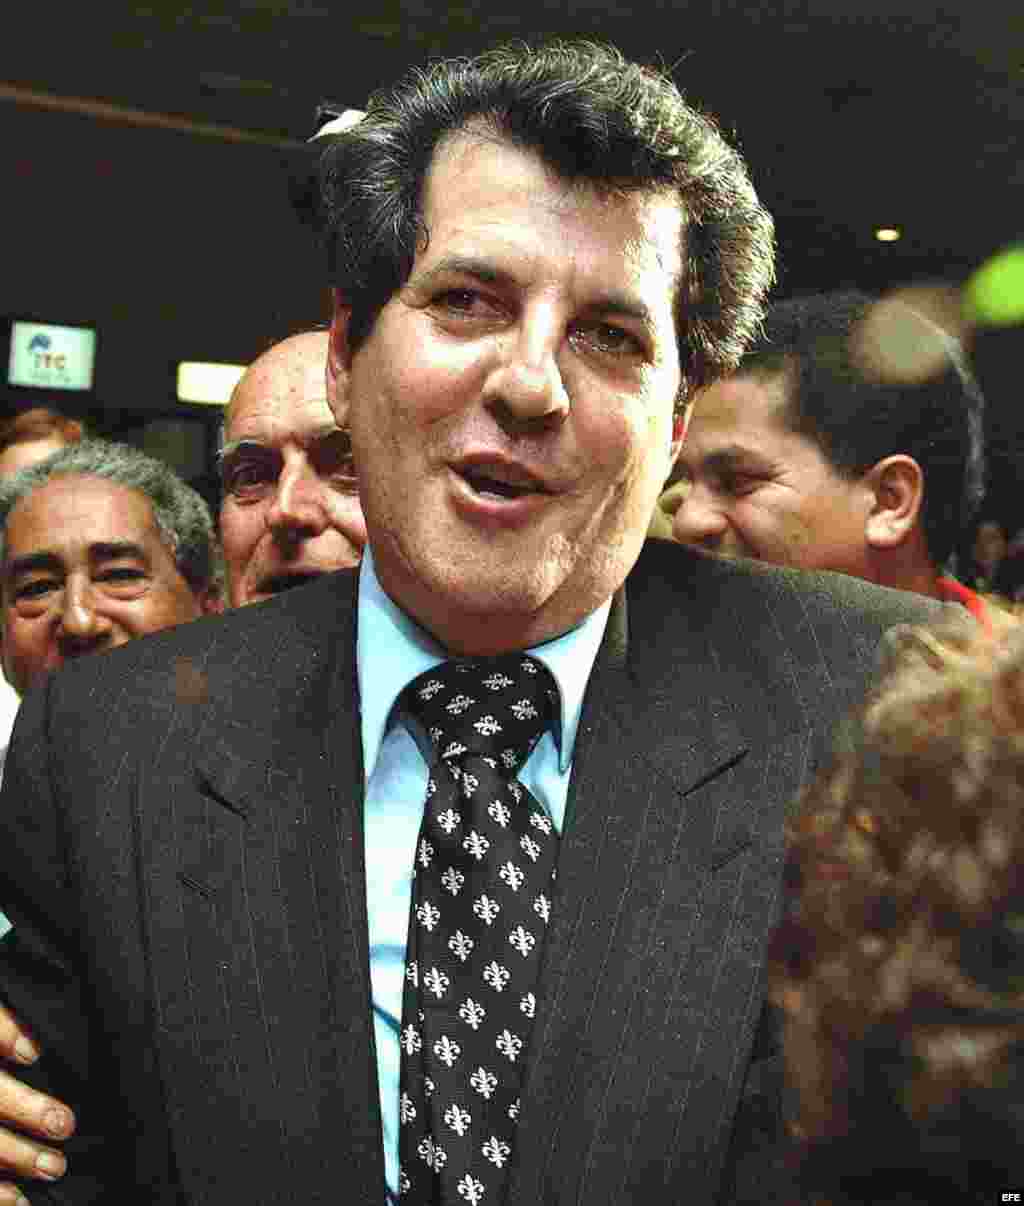 Oswaldo Paya